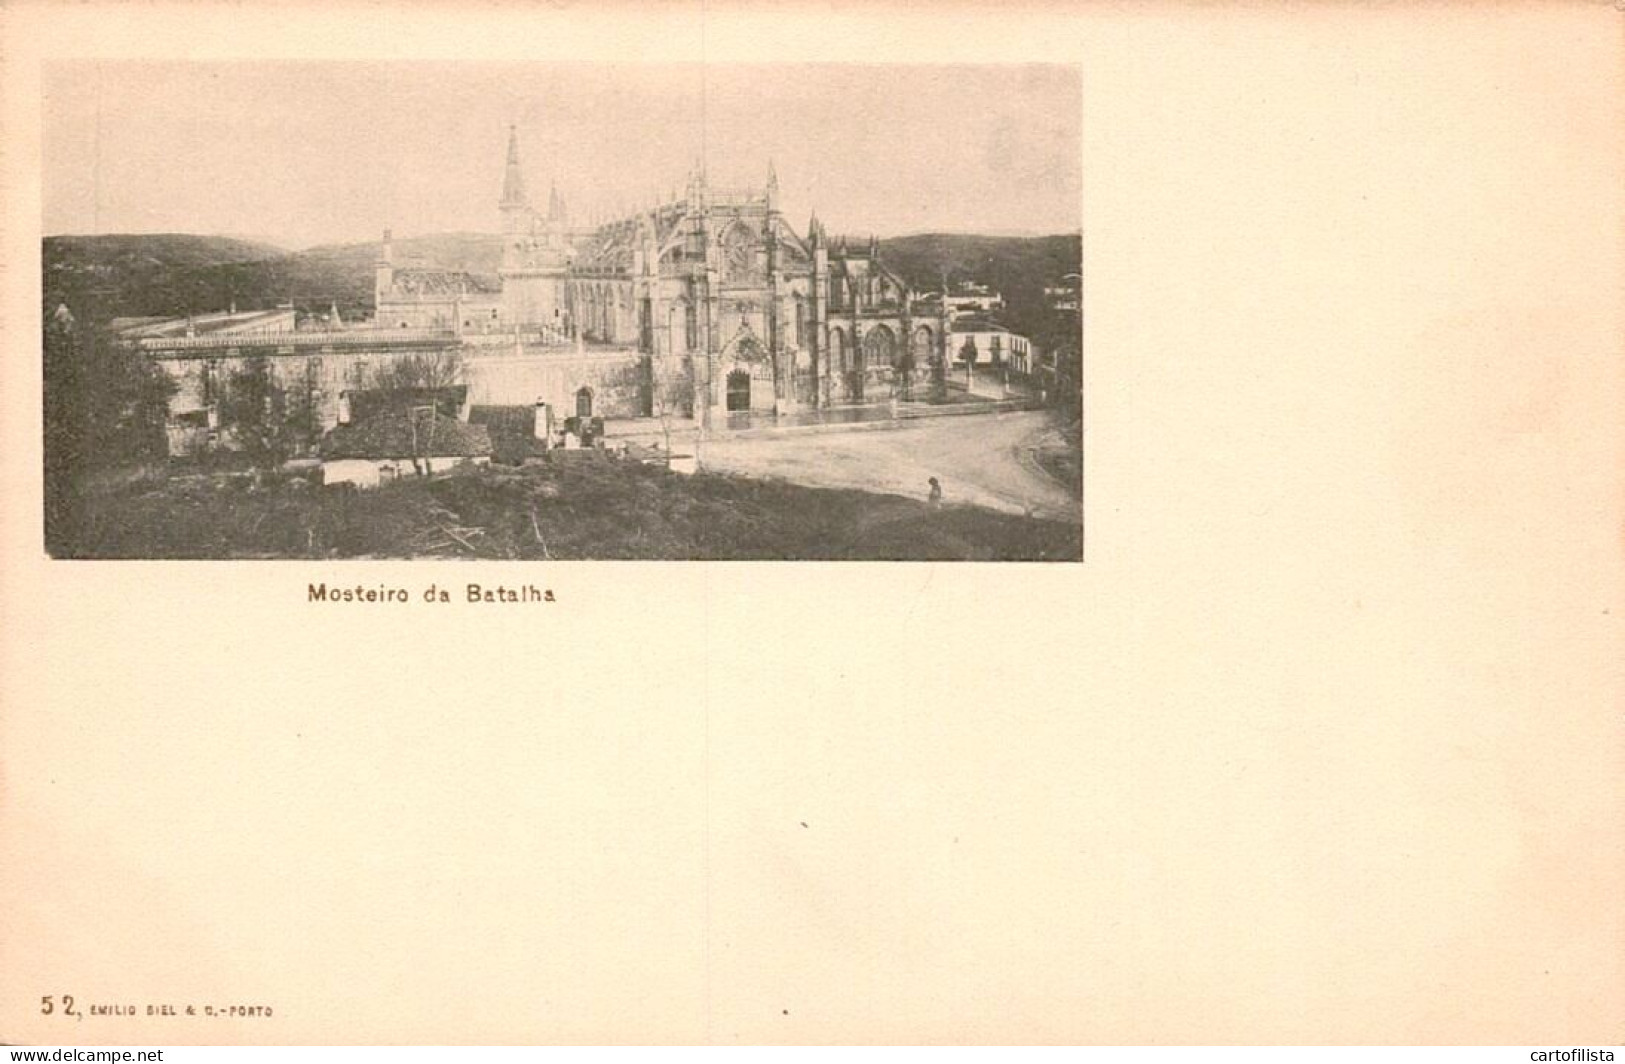 BATALHA, Leiria - Imagens Do Mosteiro (TIPO GRUSS AUS) Ed. EMILIO BIEL Nº 52  ( 2 Scans ) - Leiria